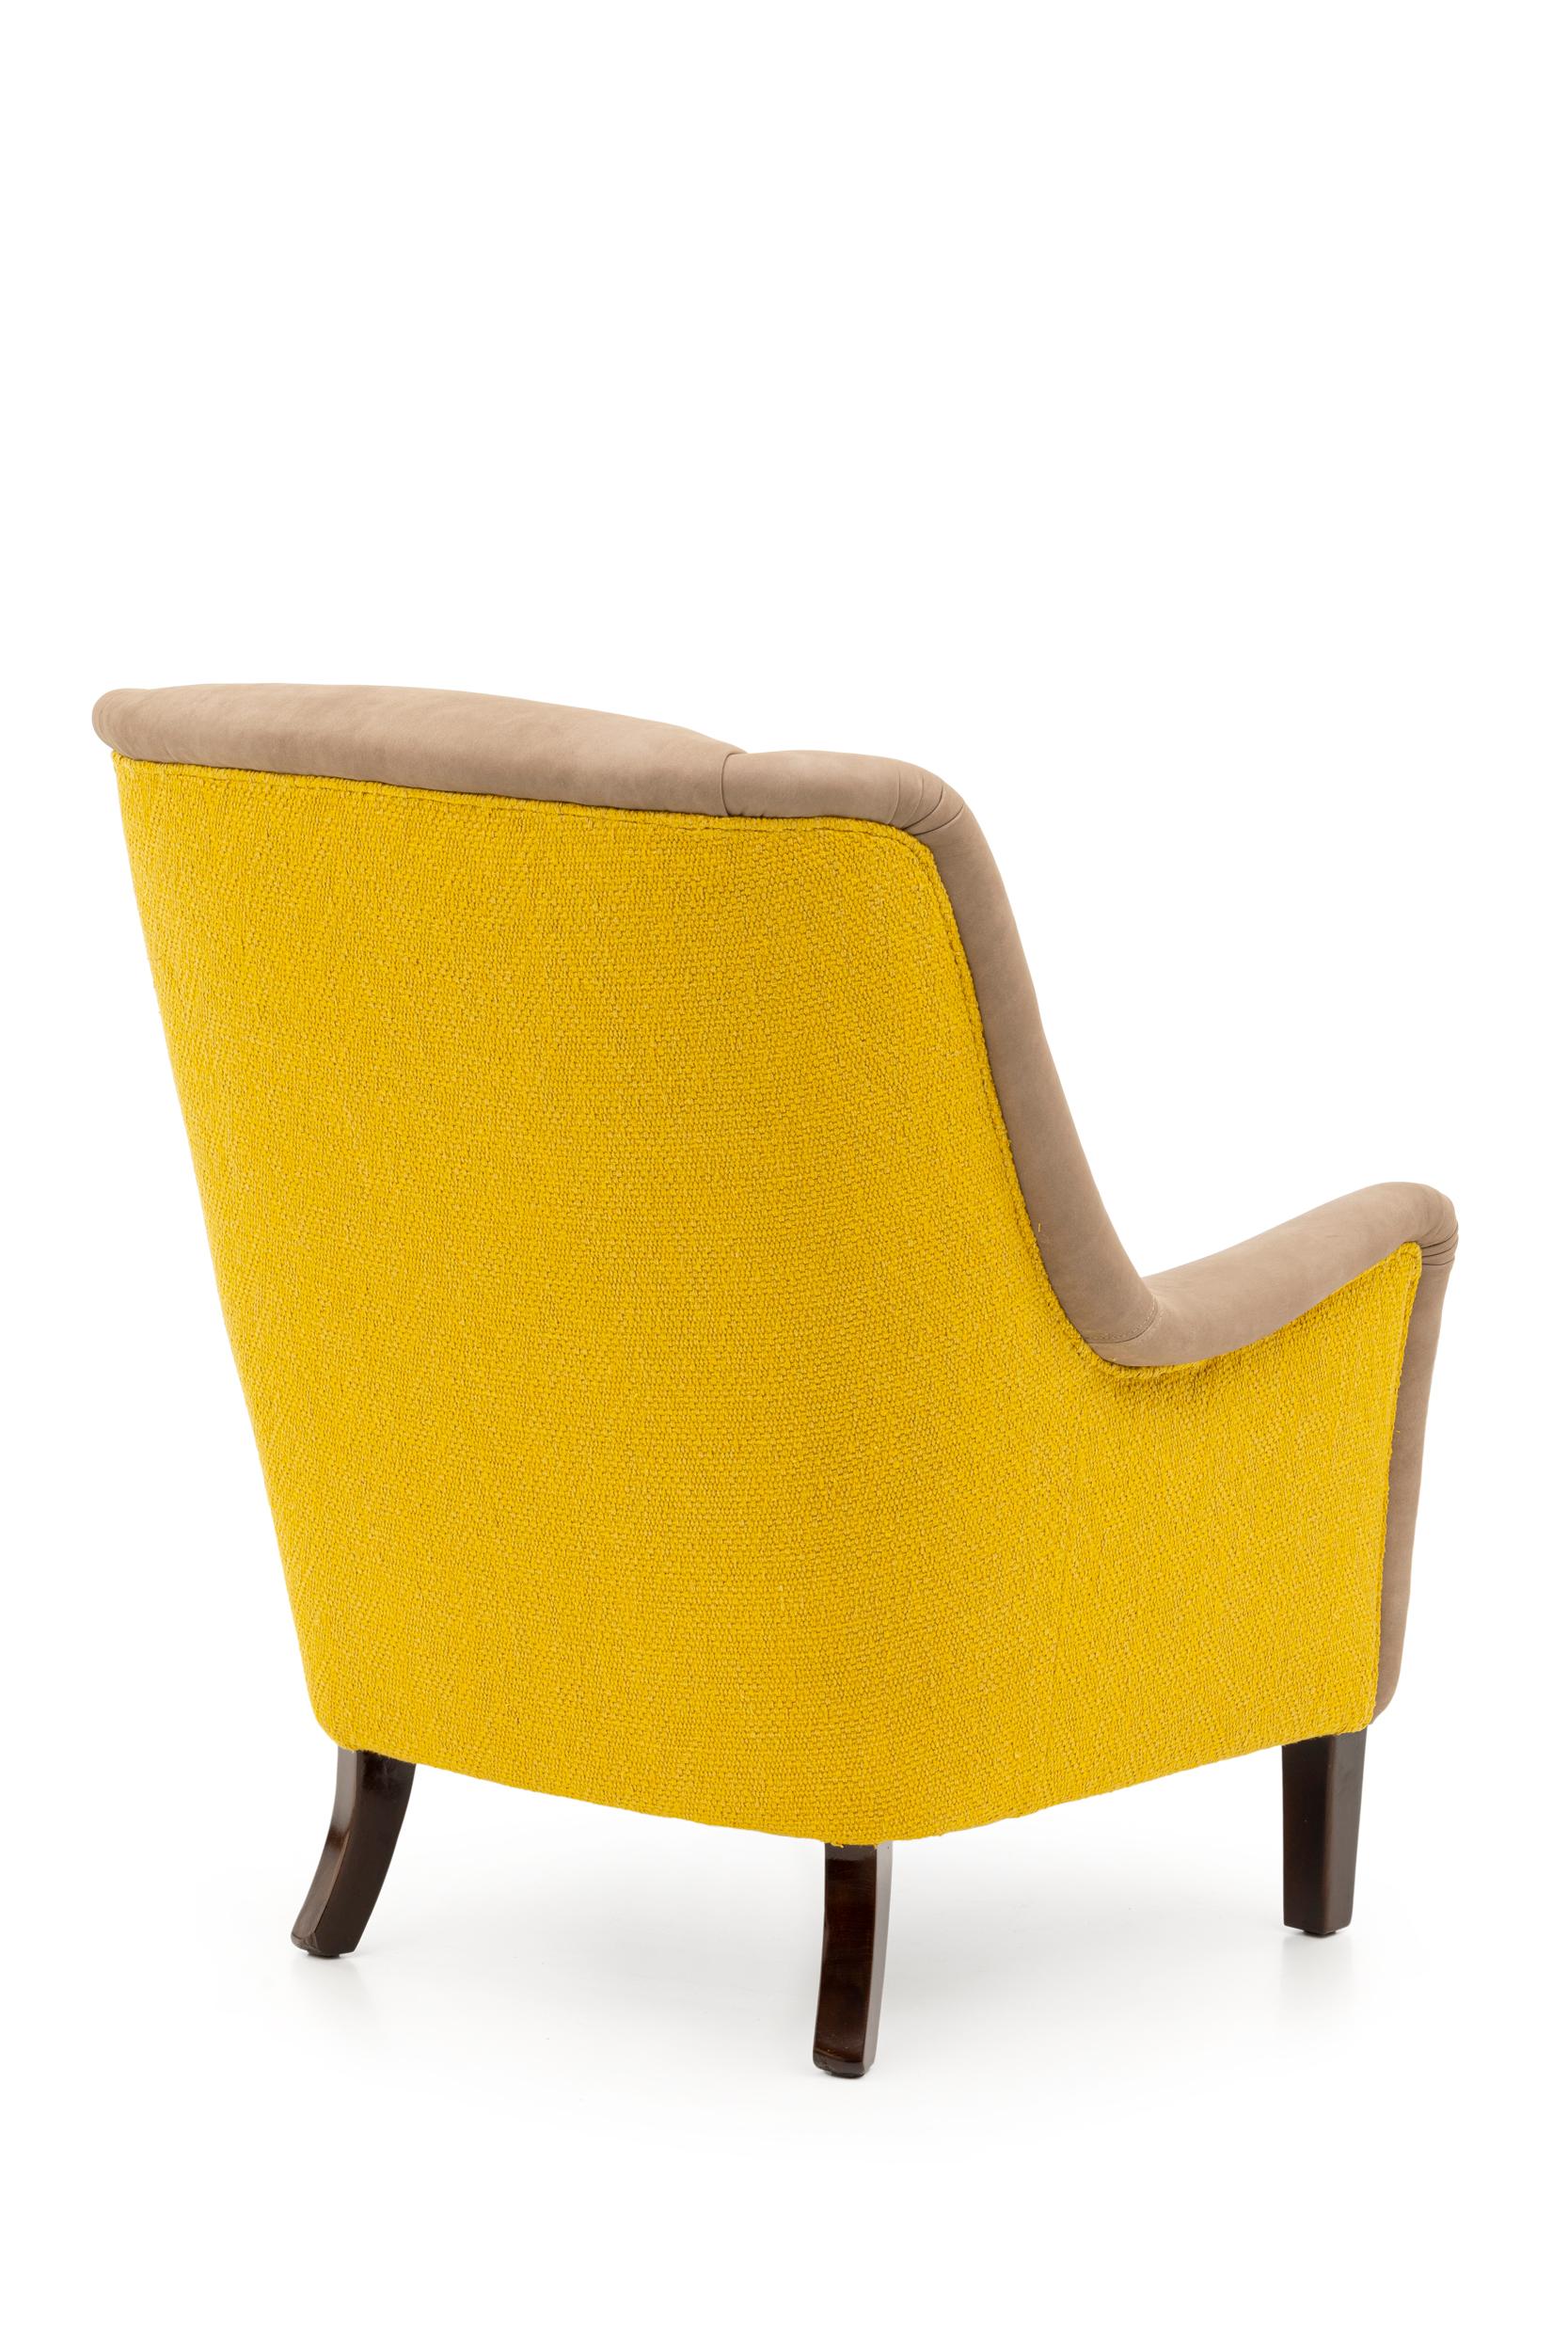 Une chaise à la fois élégante et robuste qui vise le confort.
Rembourré en cuir et avec un dossier recouvert de tissu jaune vif.

Cette chaise est produite au Portugal par des artisans hautement qualifiés, ce qui nous permet de garantir la qualité